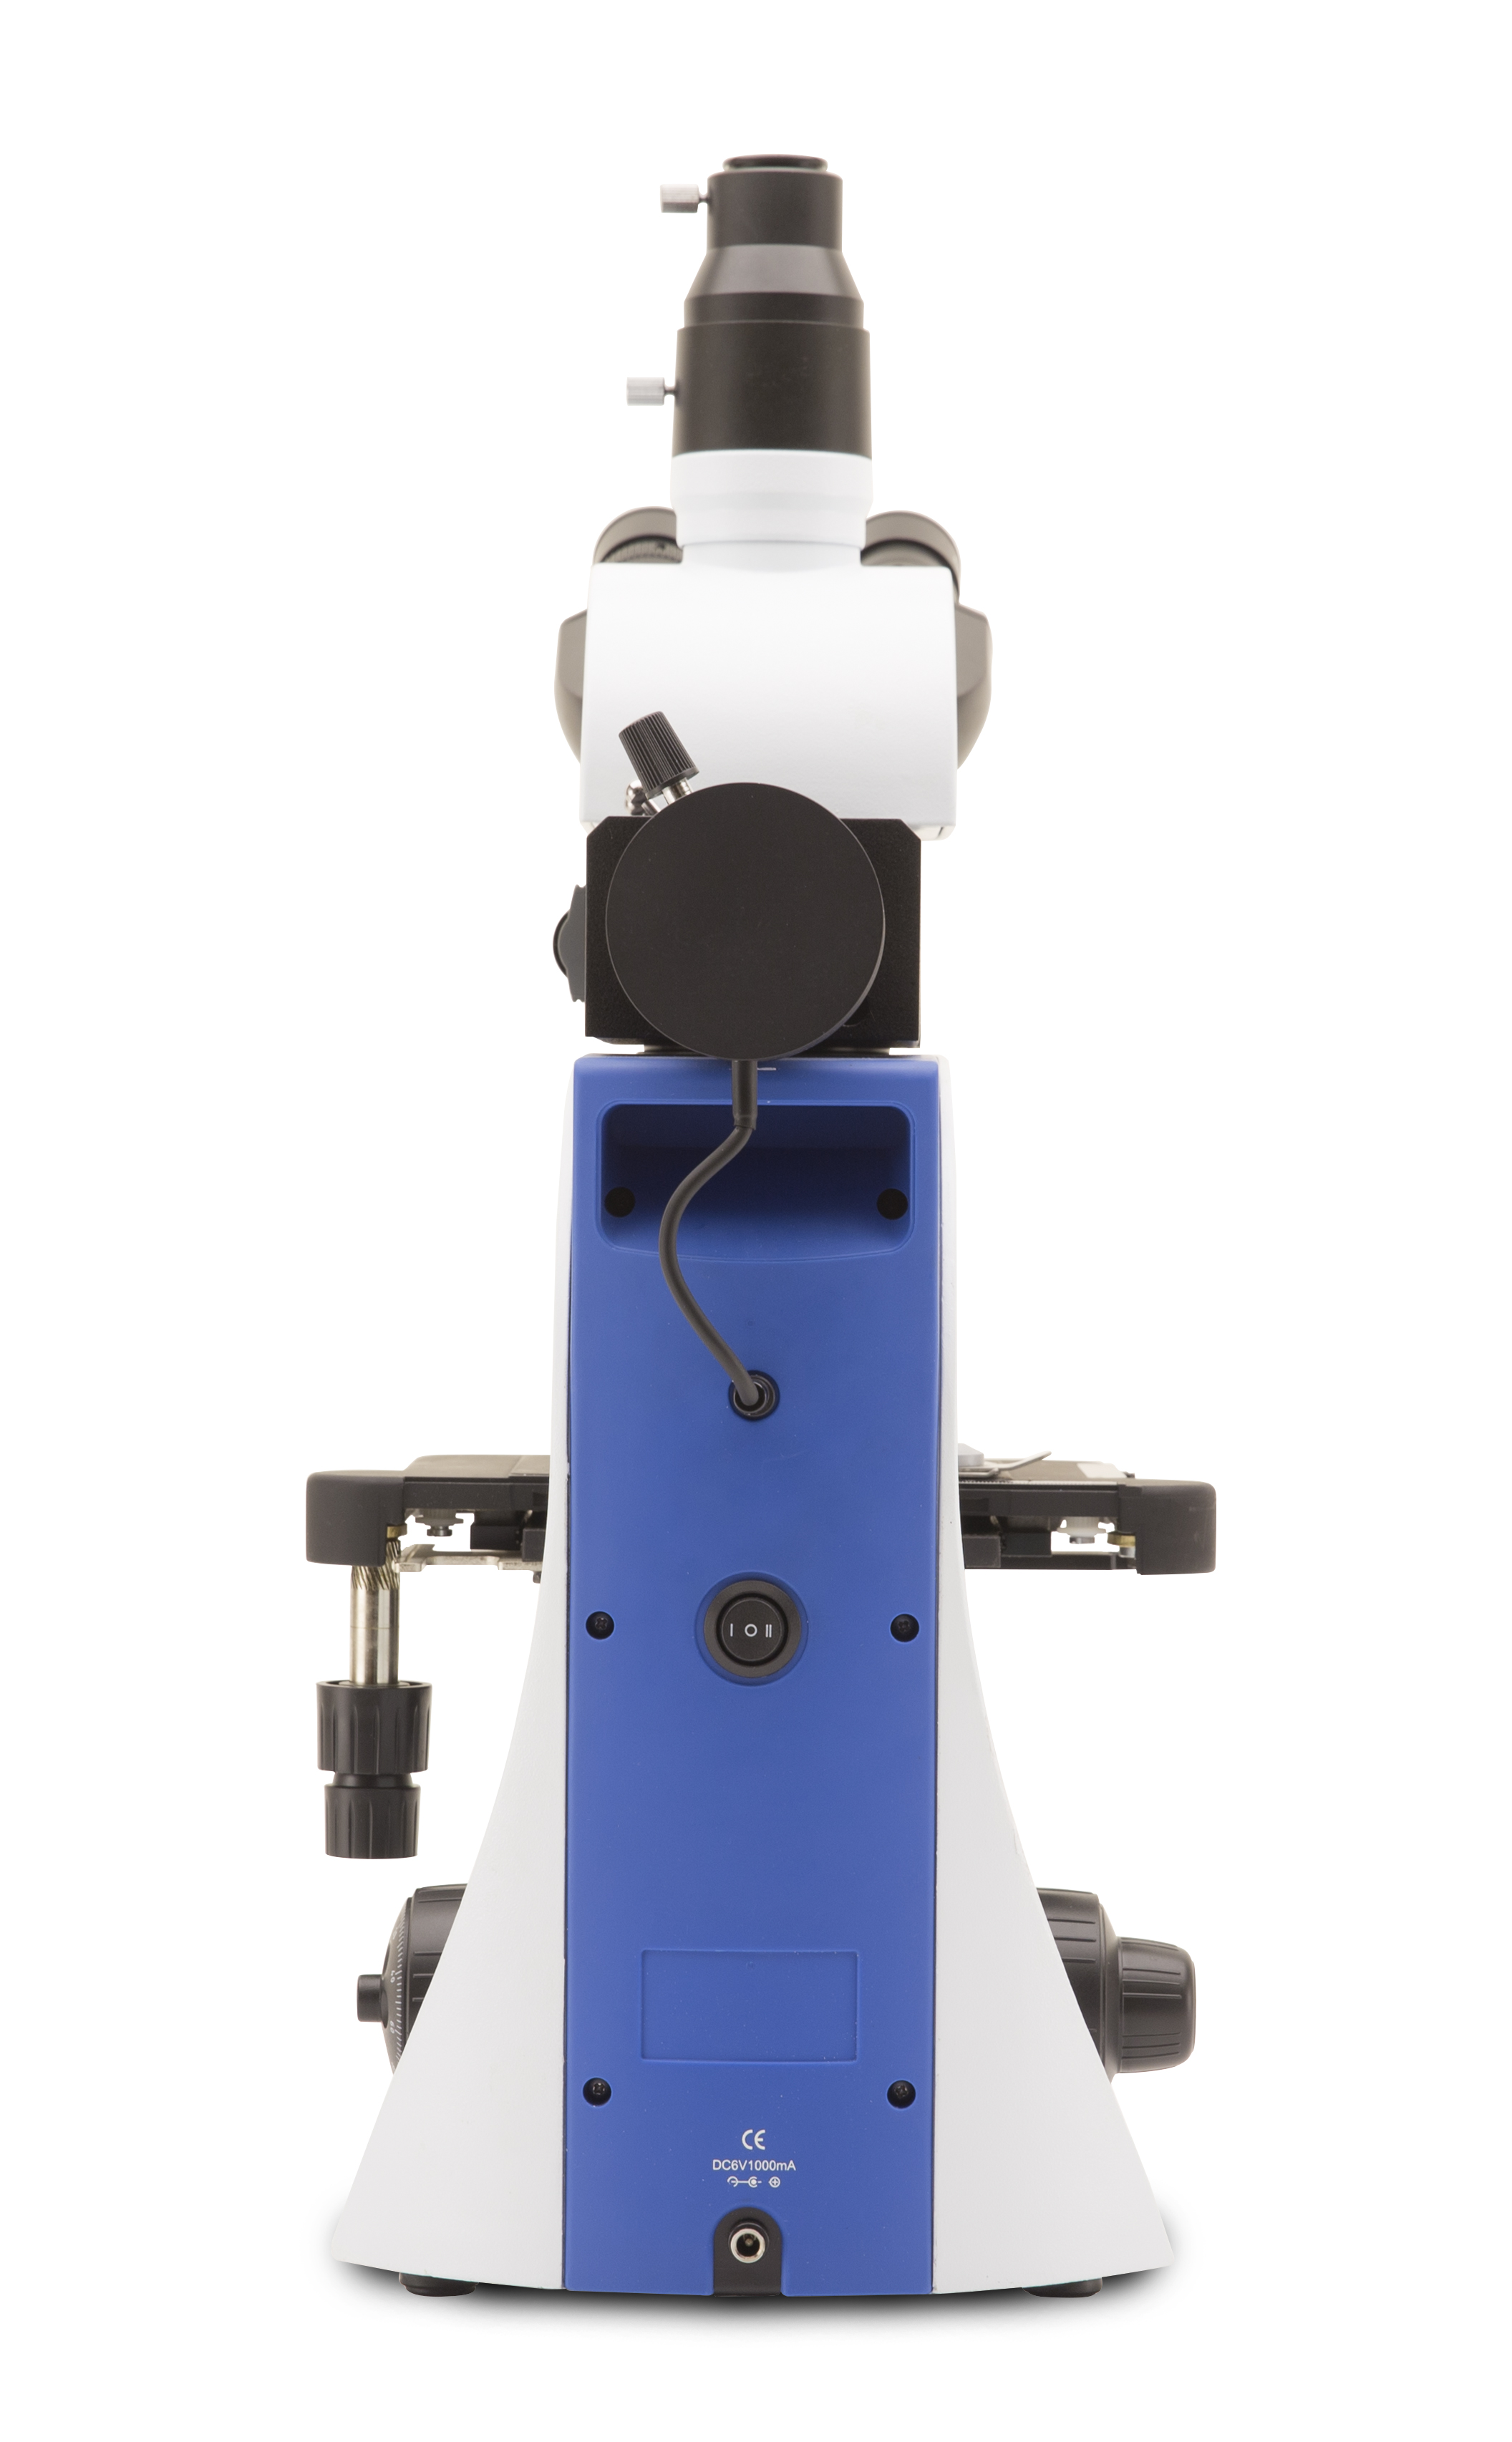 กล้องจุลทรรศน์แบบแสงตกกระทบสำหรับงานวัสดุและโลหะวิทยา (Metallurgical Upright Microscope) ยี่ห้อ OPTIKA รุ่น B-383MET